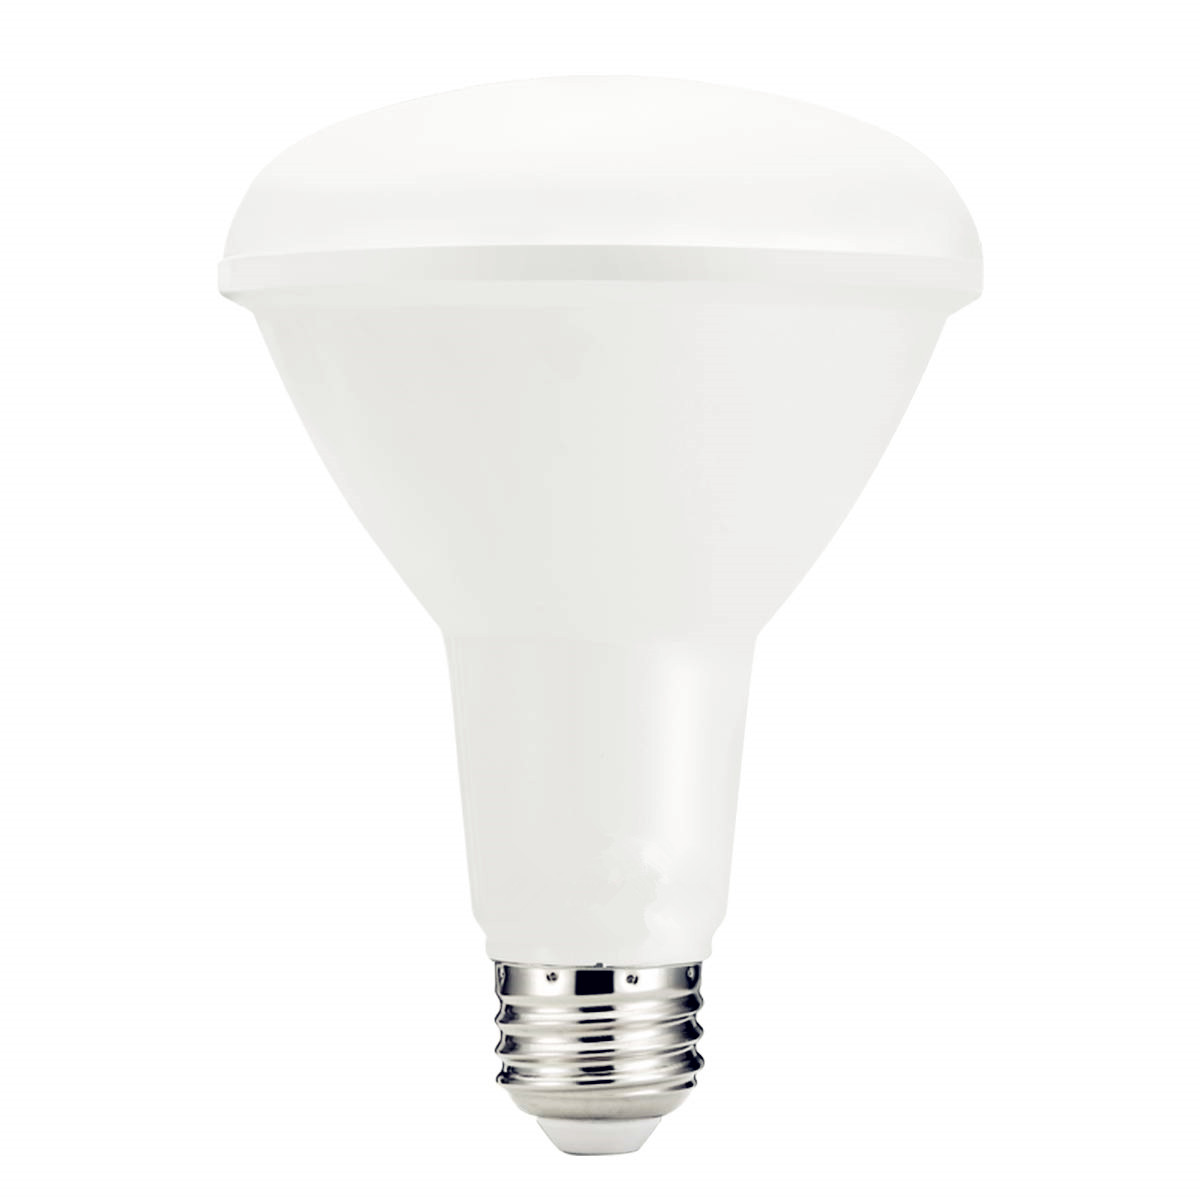 Li-Tech GU10 LED Bulb, 120V 6.5W Equivalent 50W 3000K(Warm White)